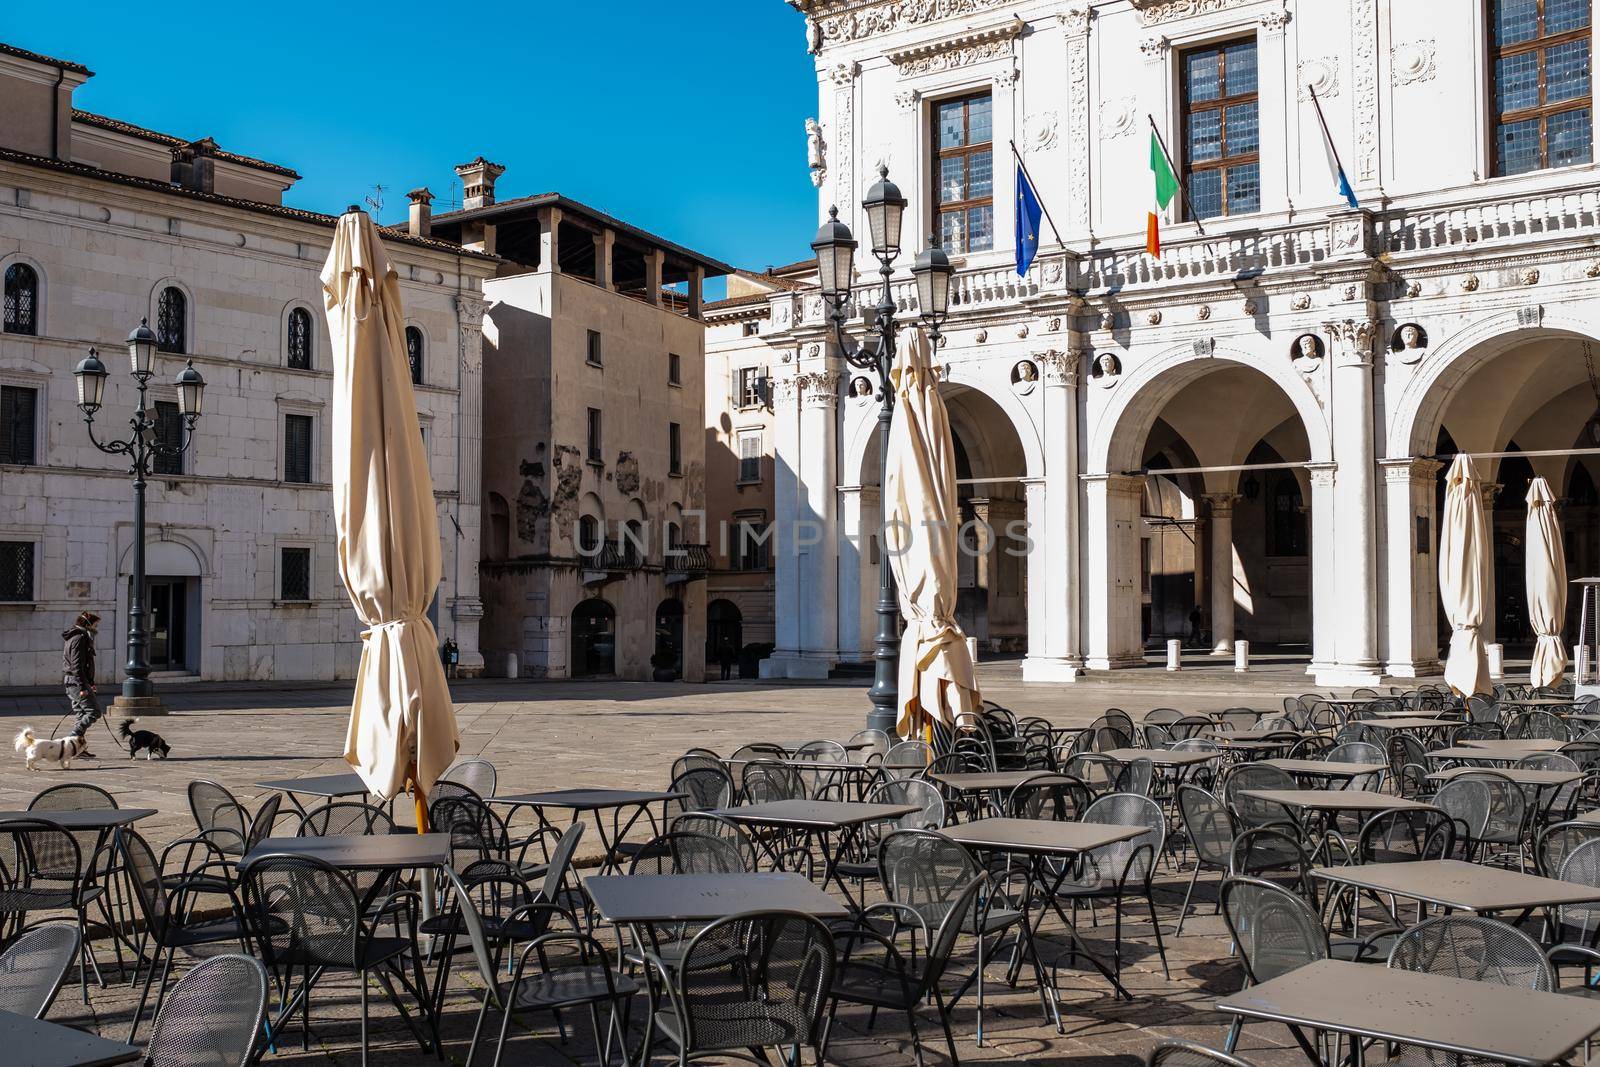 The life under Italy's coronavirus lockdown. Piazza della Loggia (Loggia Square) in Brescia, Lombardy by Riccarduska